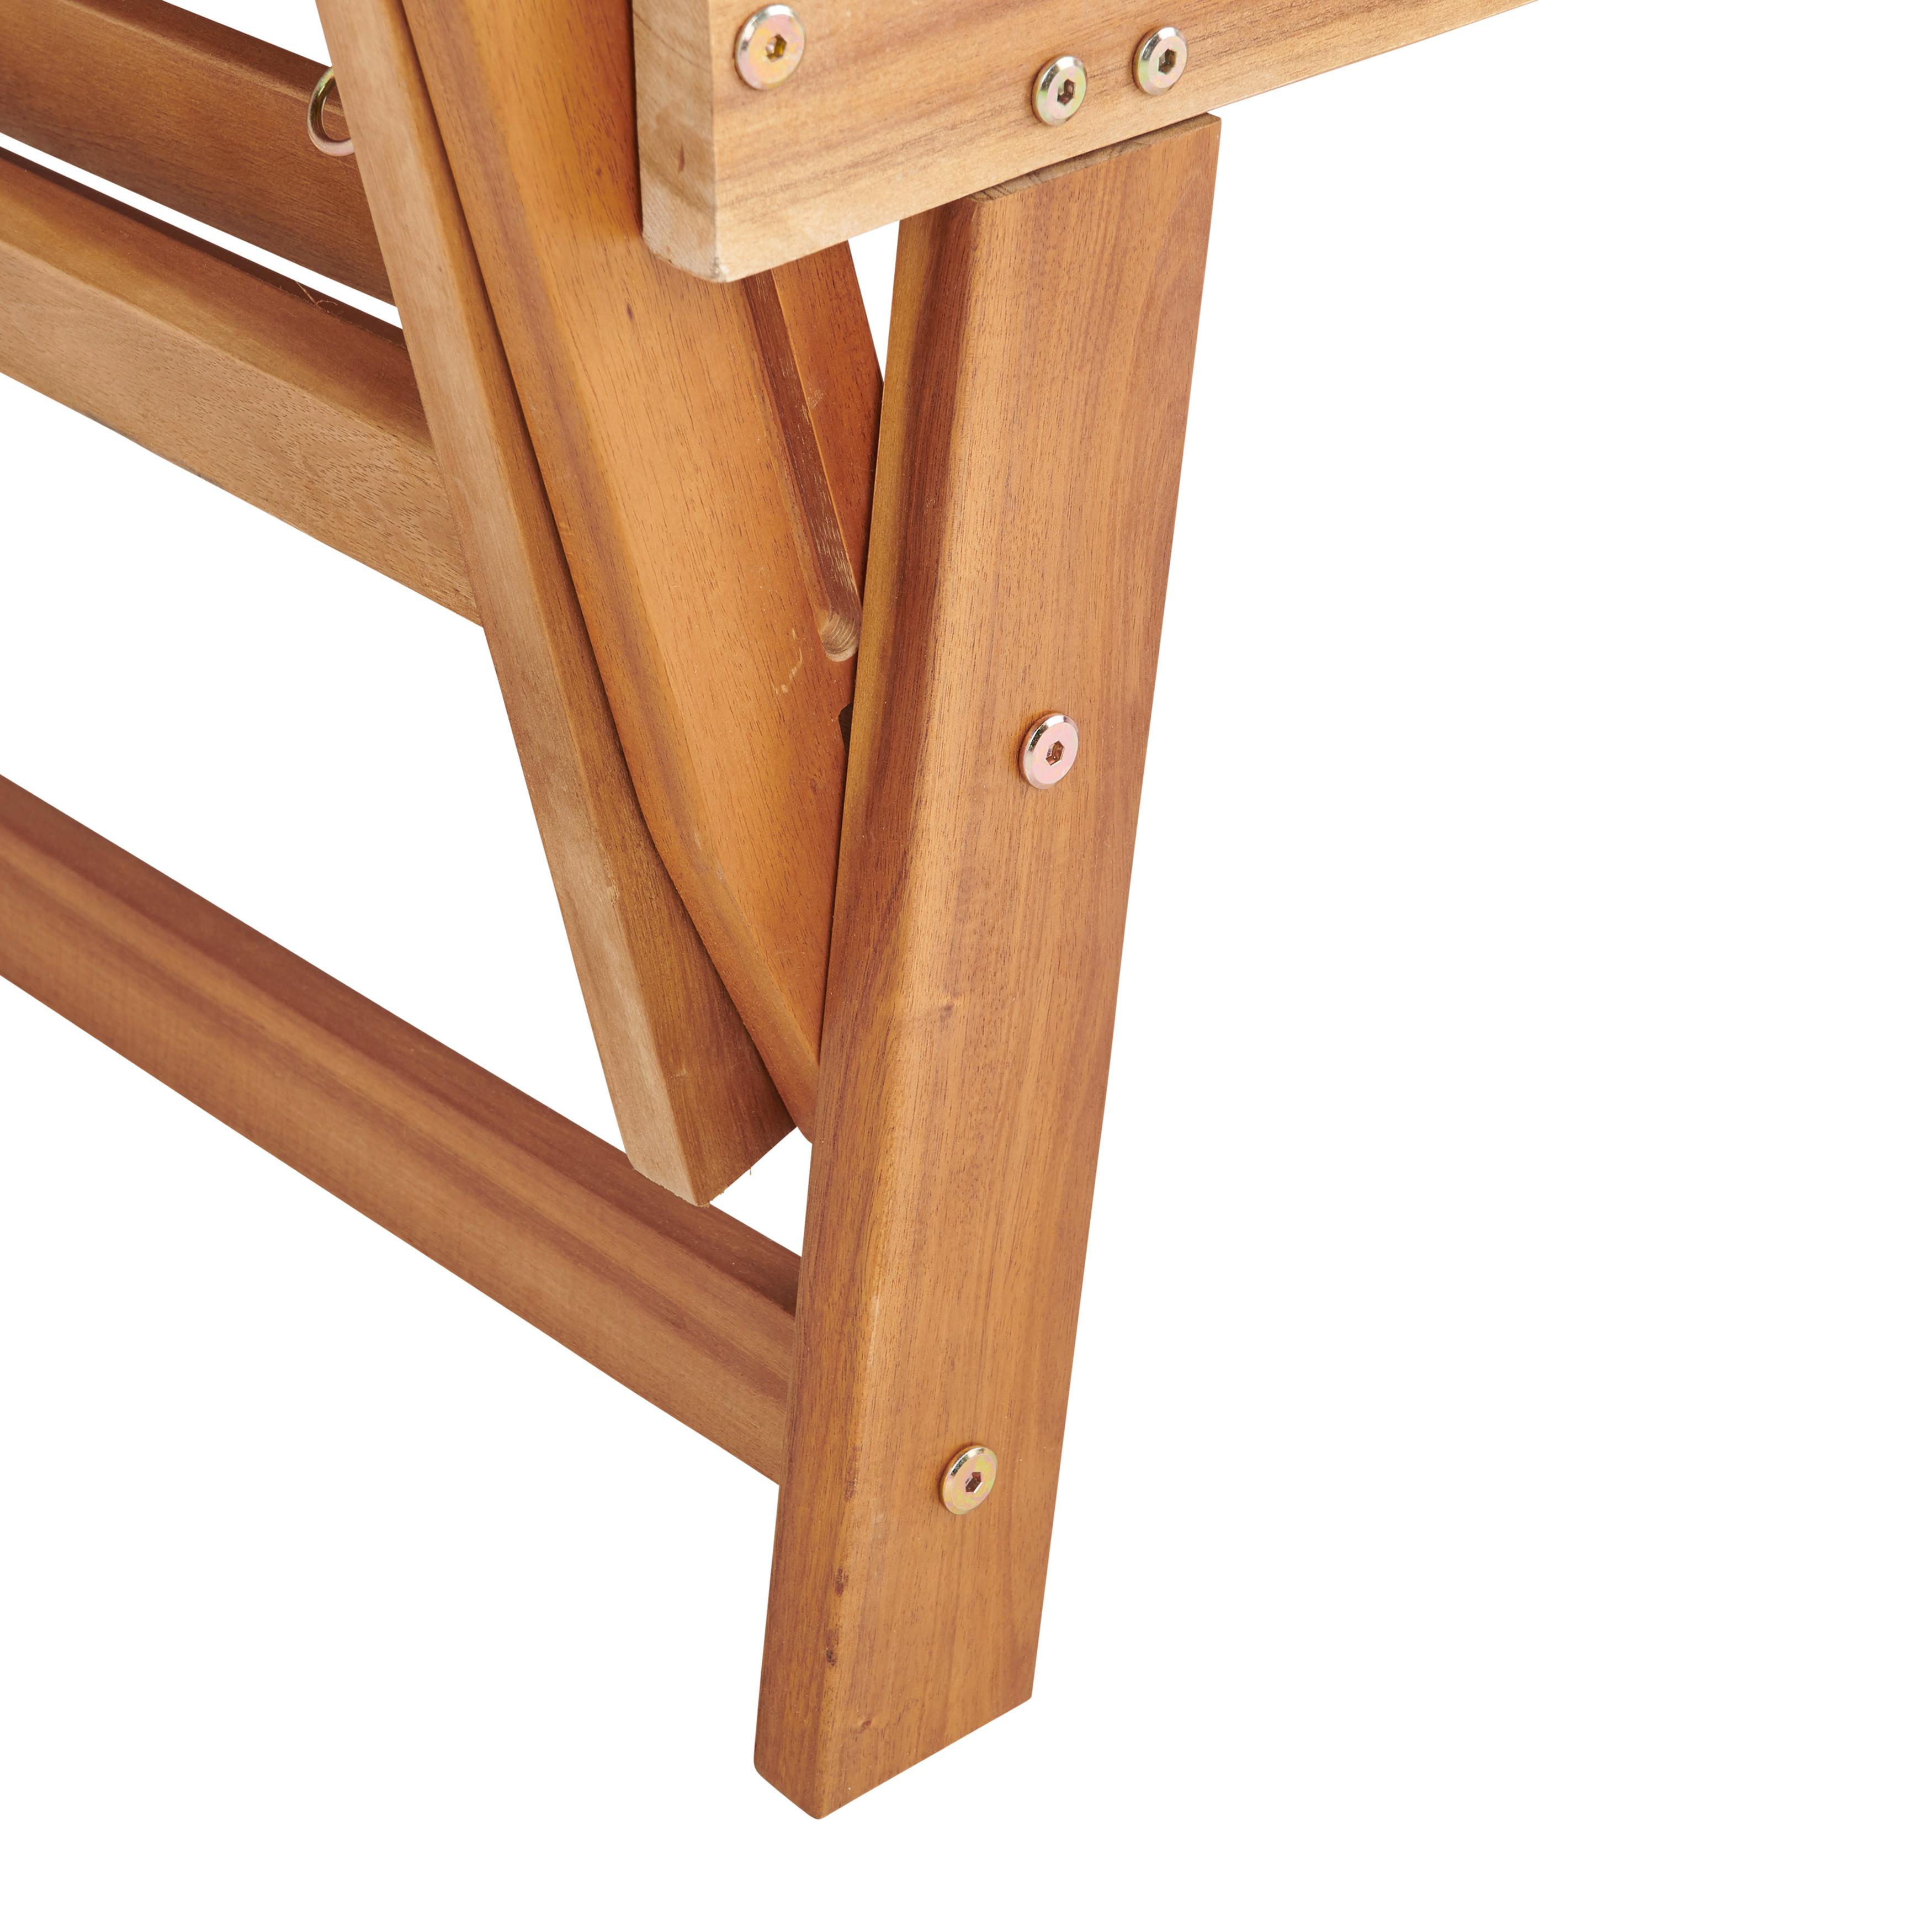 Gartenbank Holz 2-Sitzer Bali mit Liegefunktion und Kissen - Grau/Akaziefarben, MODERN, Holz/Textil (190/75/68cm) - James Wood